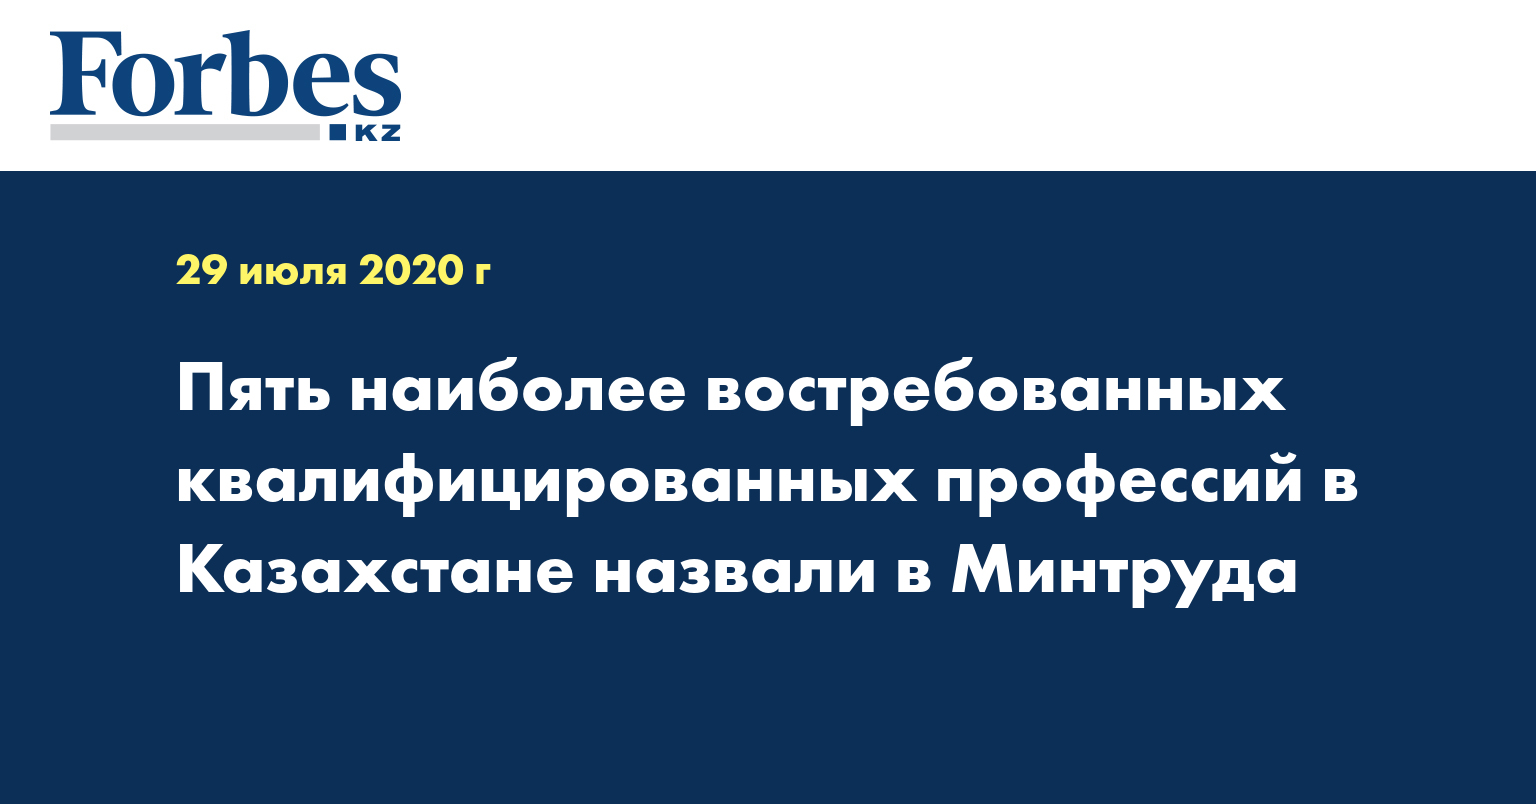 Пять наиболее востребованных квалифицированных профессий в Казахстане назвали в Минтруда